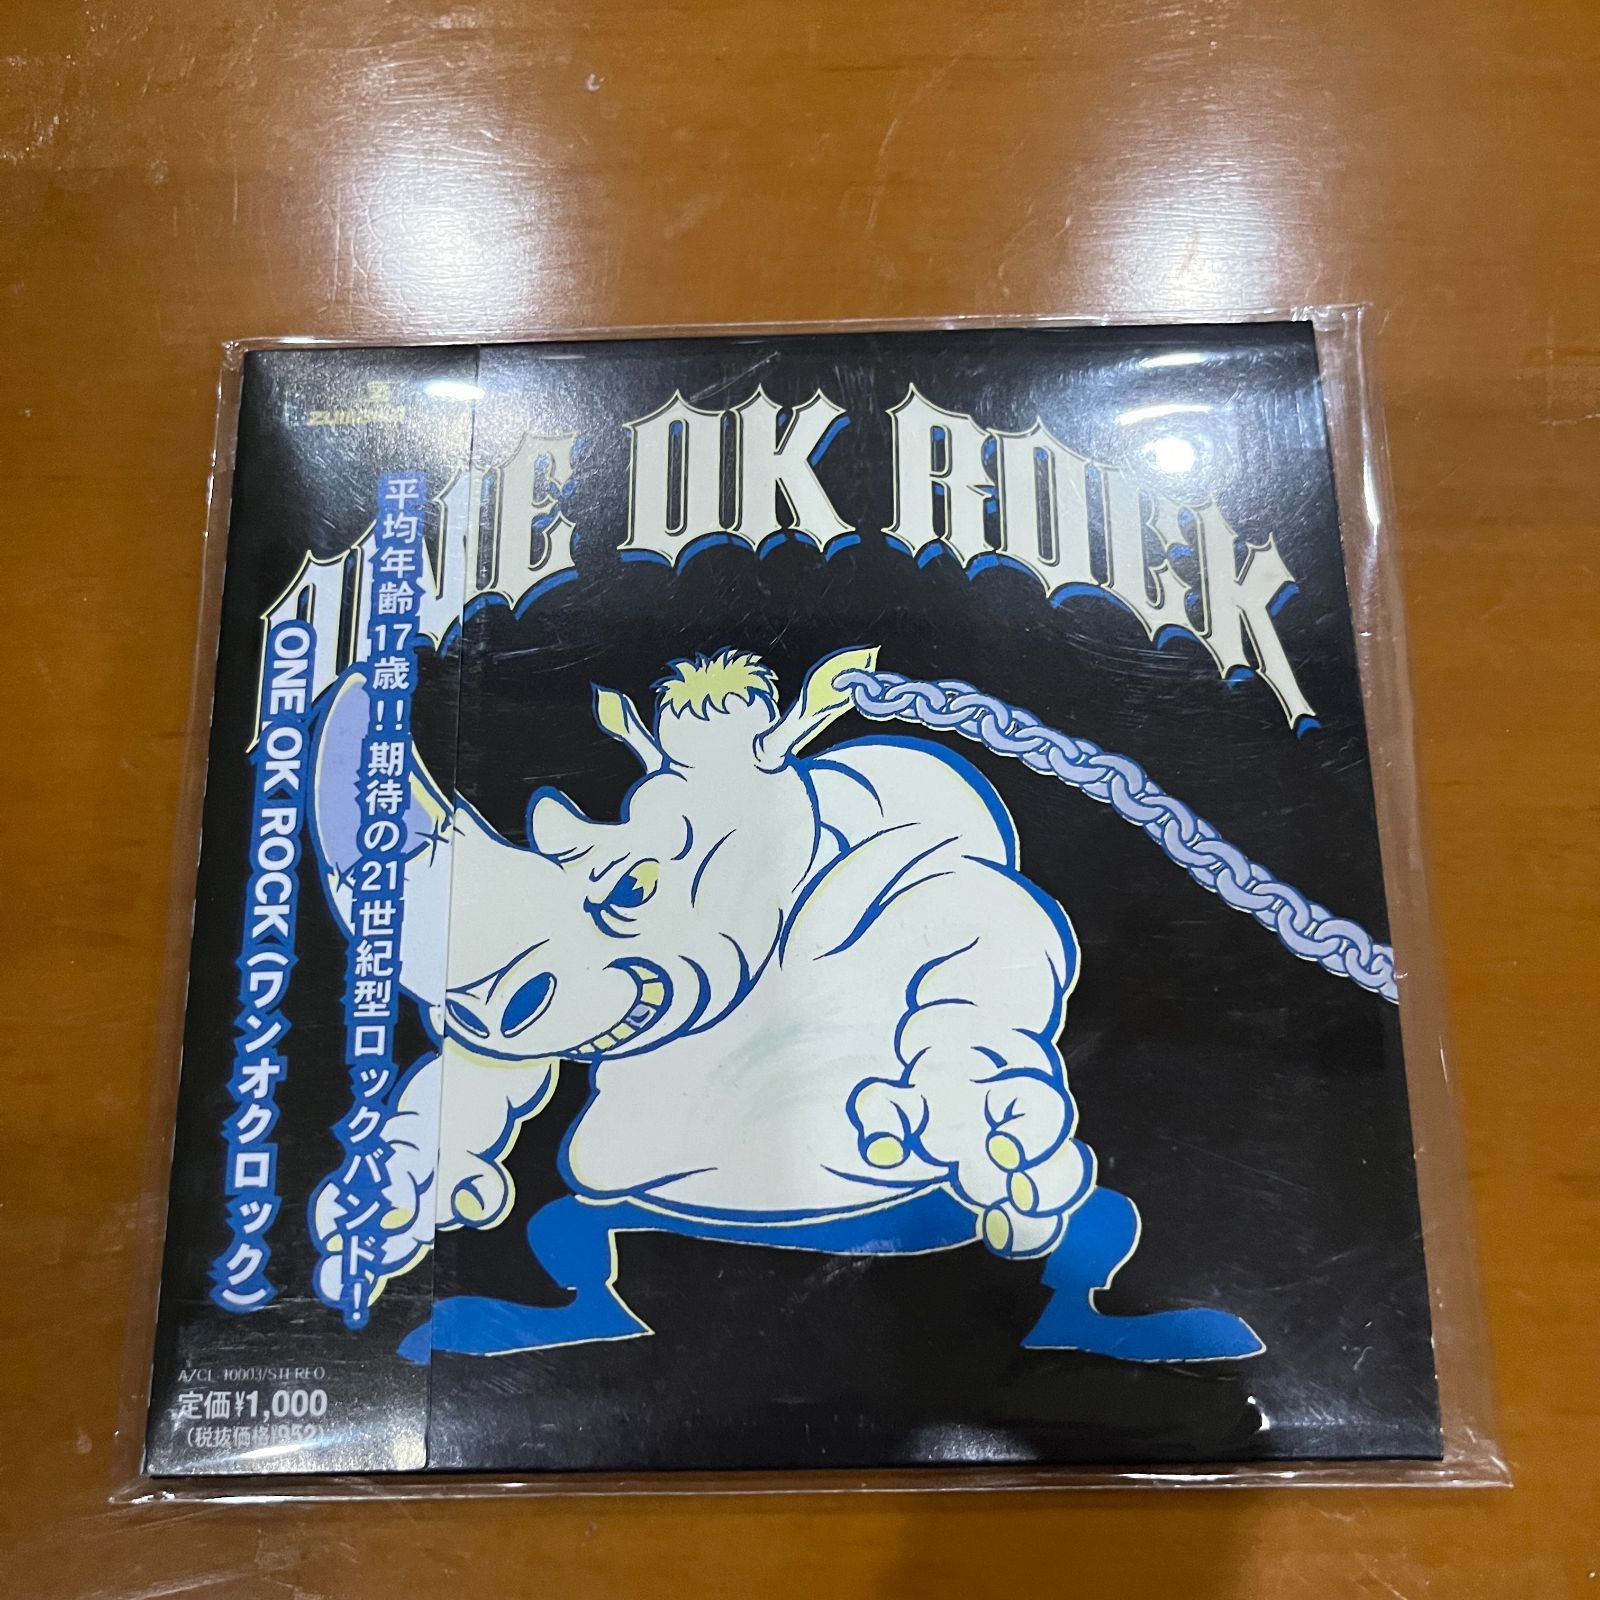 ONE OK ROCK 2009+Skyfall+2nd+インディーズ1st邦楽